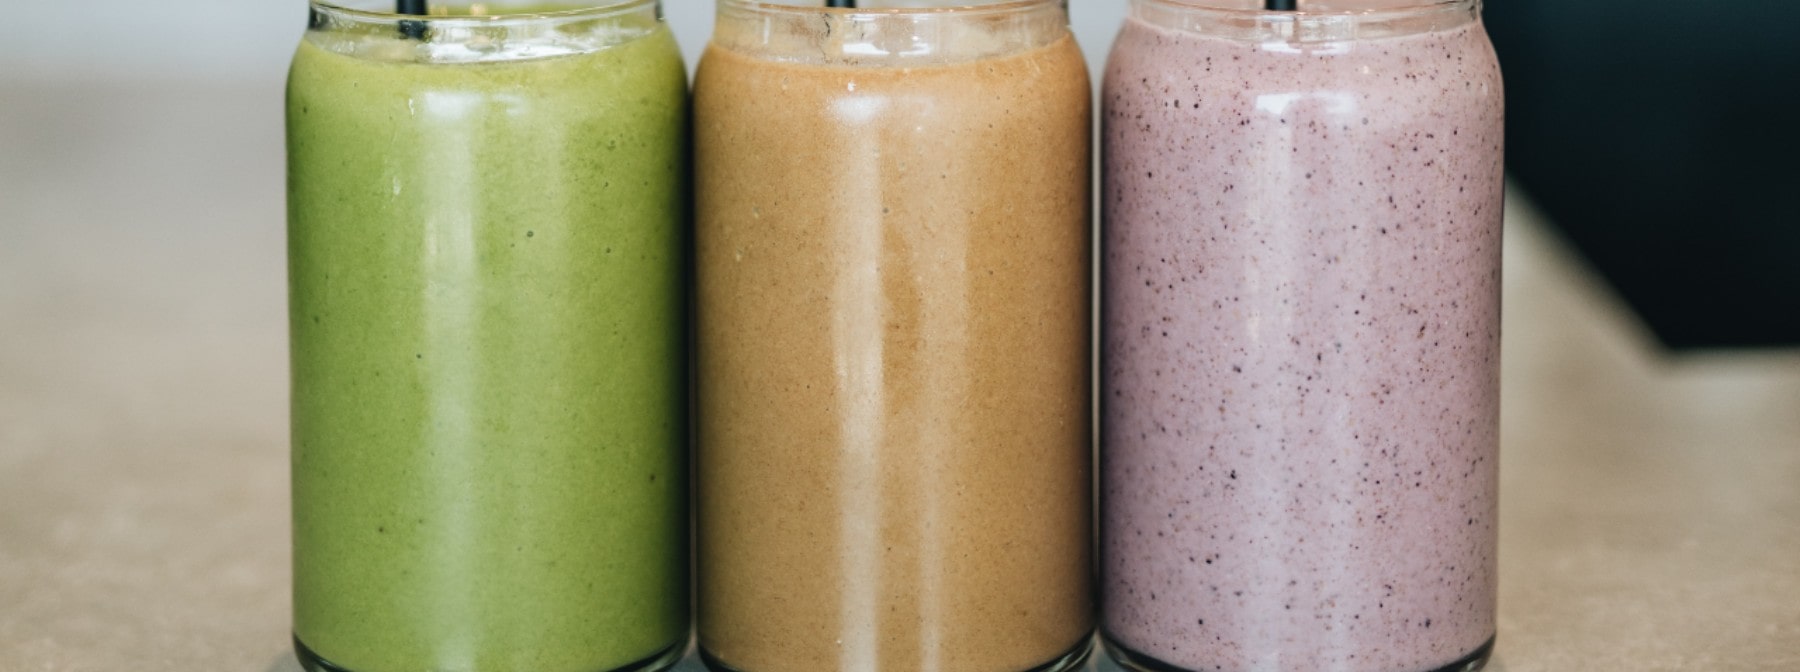 Ce este dieta cu smoothie? – Myprotein Blog